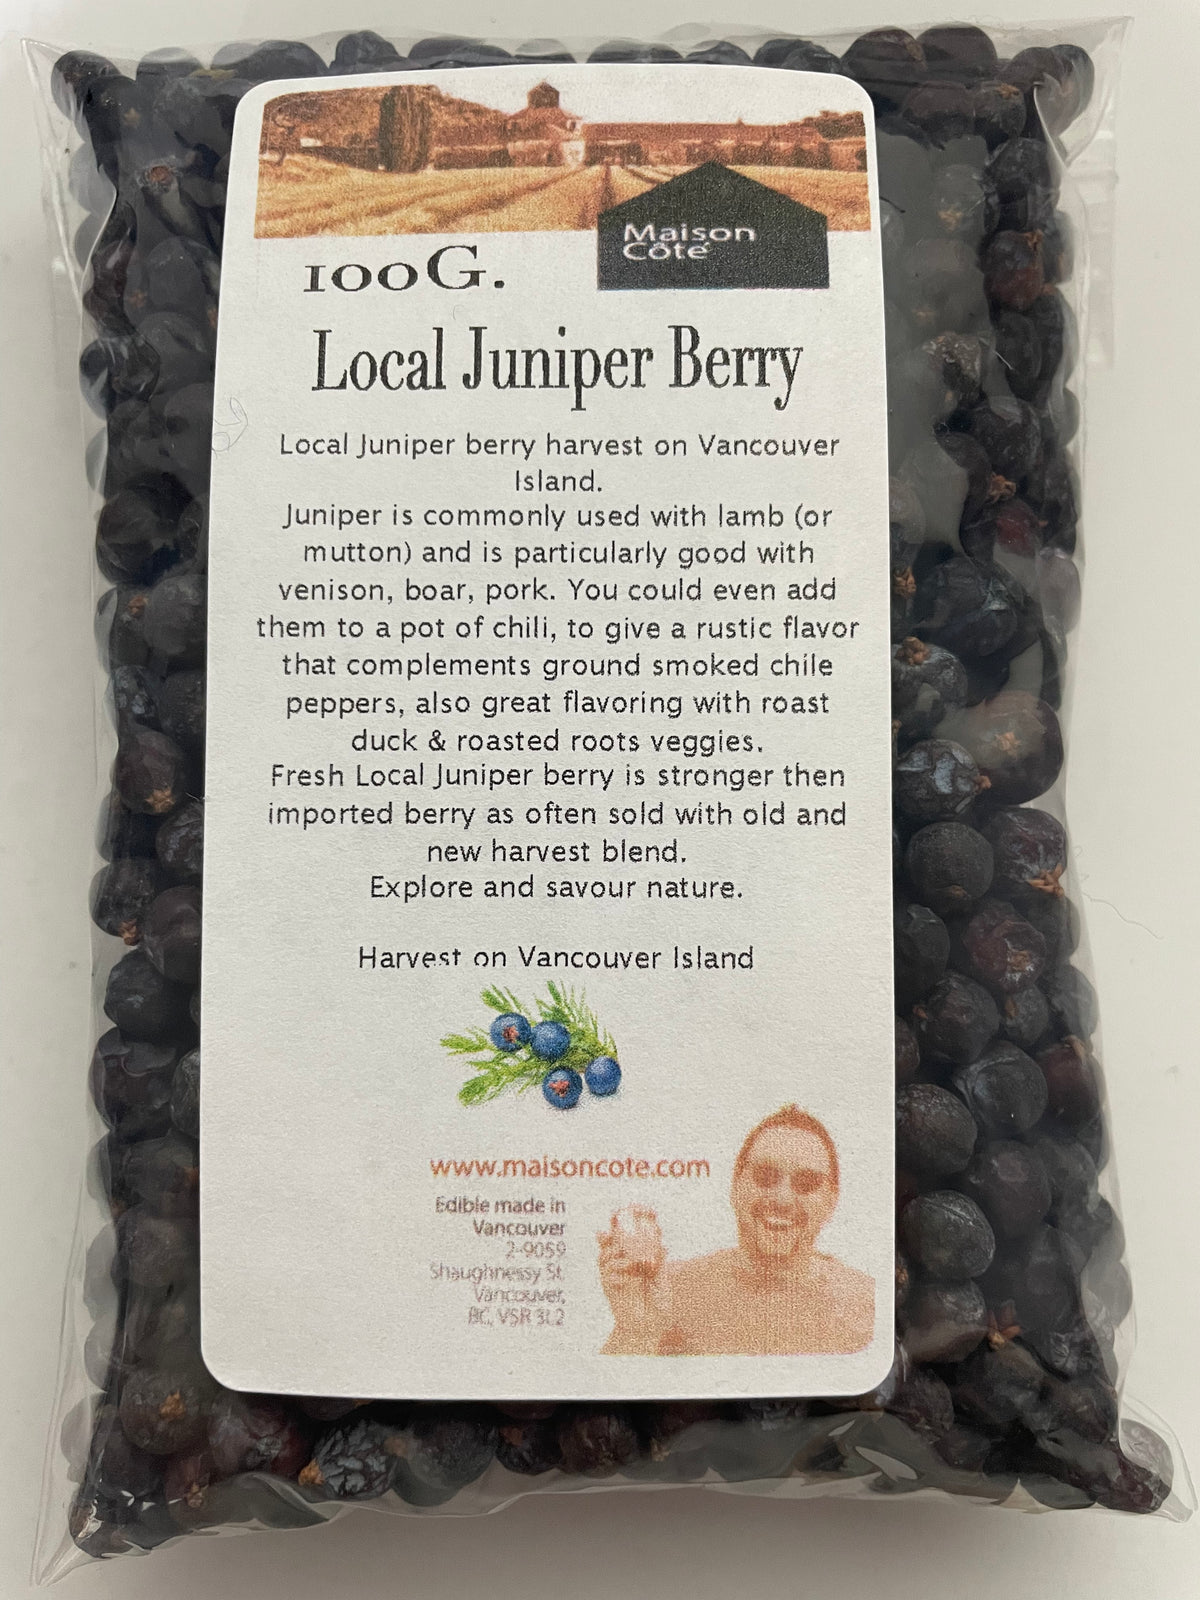 Local Juniper berry